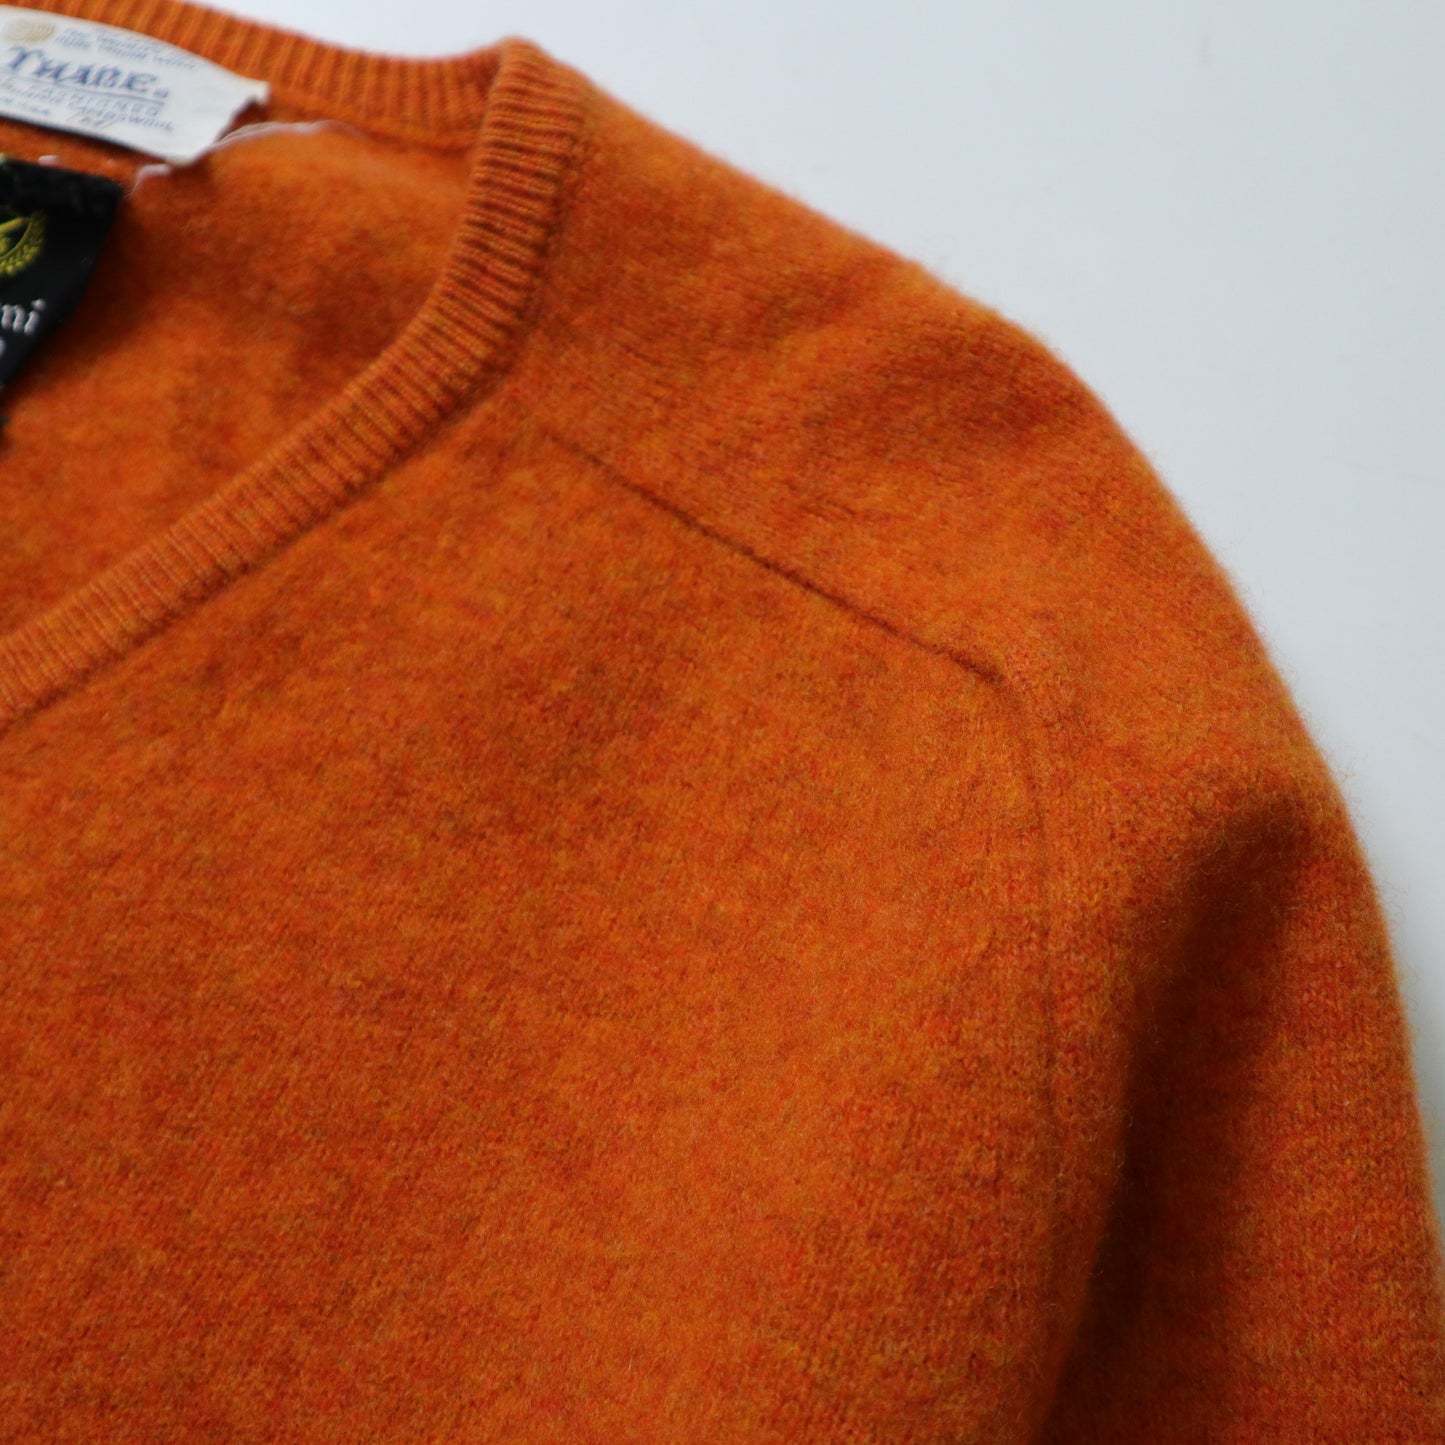 70年代 アメリカ製 オレンジバージンウール Vネックウールセーター